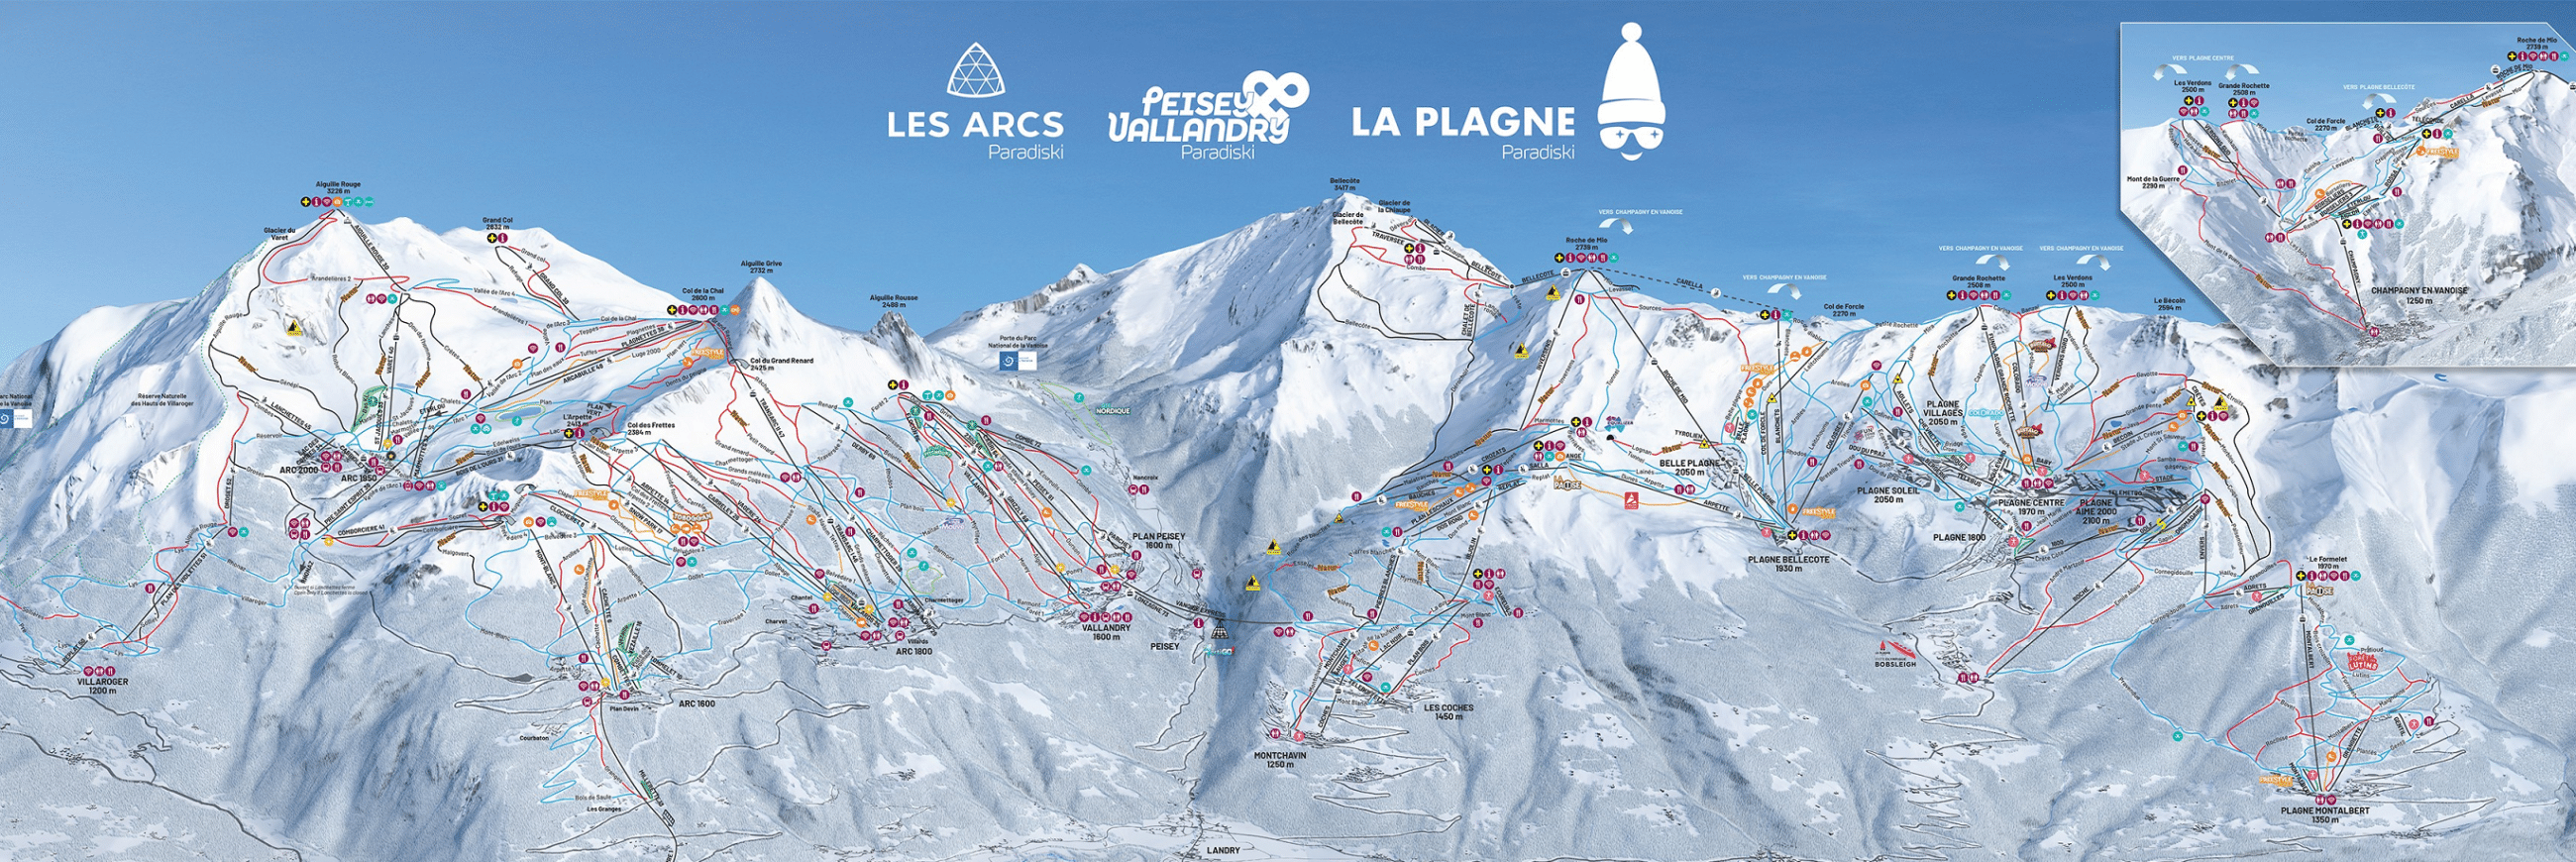 Paradiski - Les Arcs & La Plagne - Ski slopes map